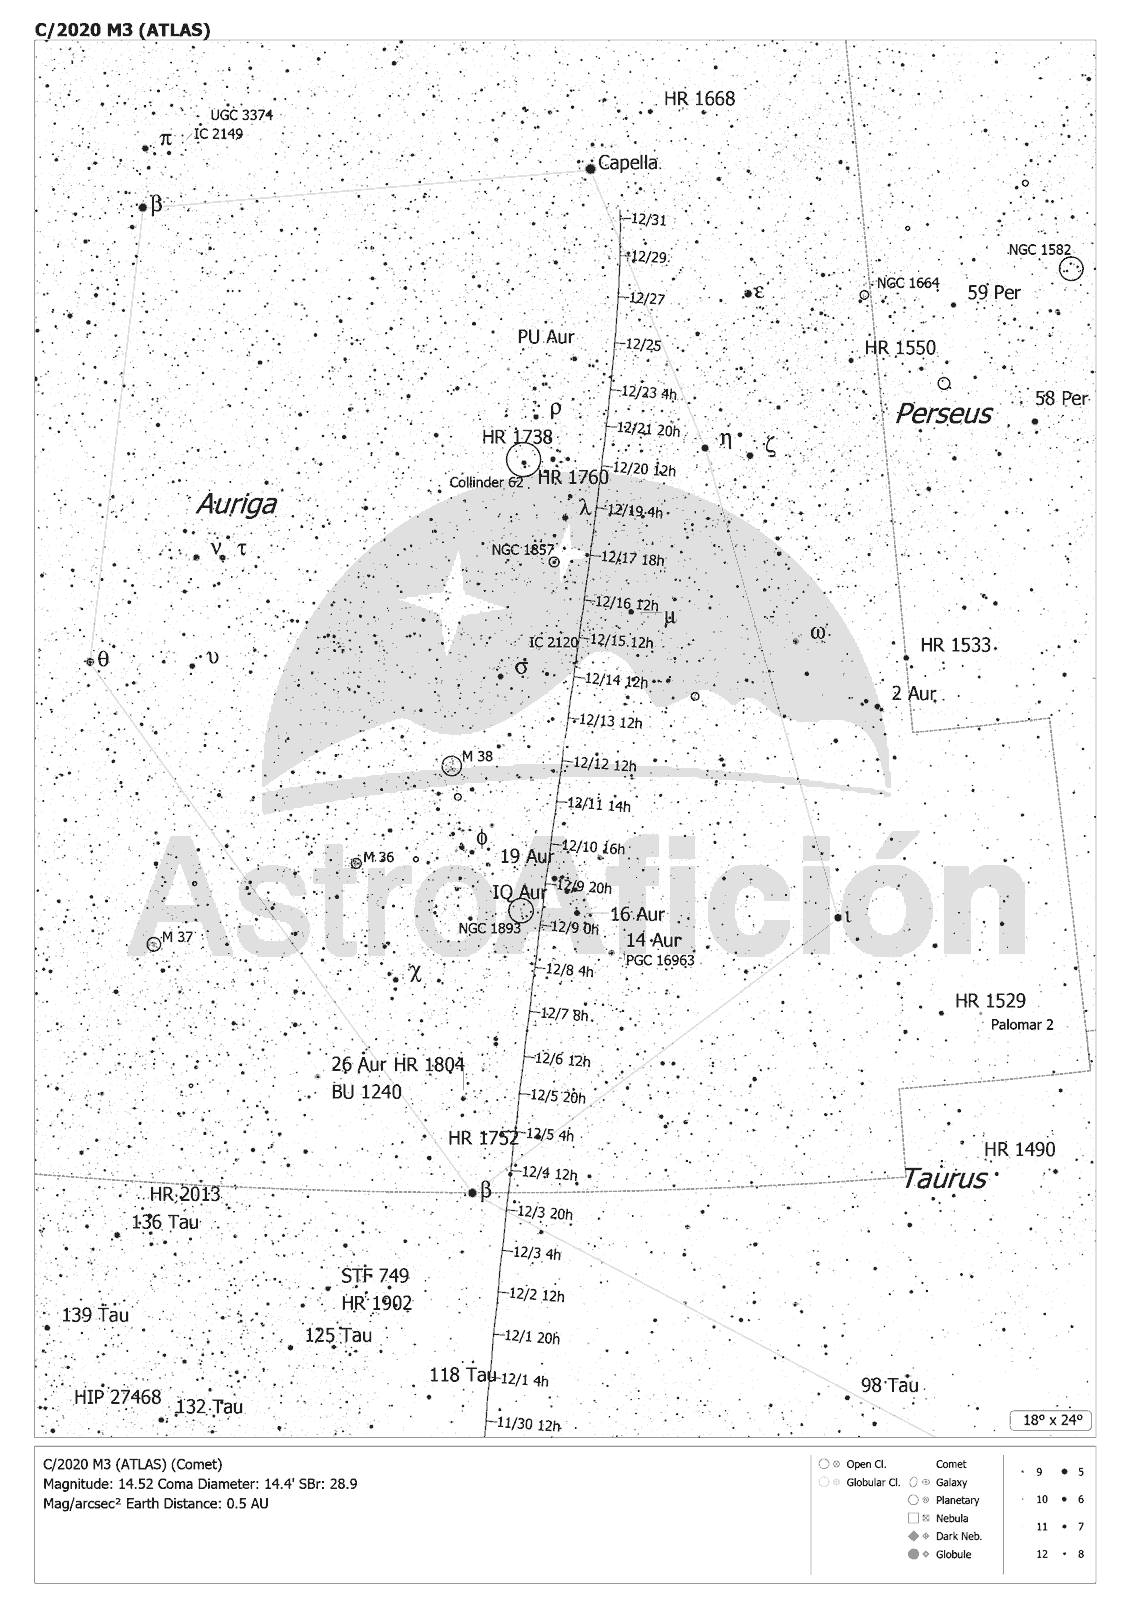 Carta de localización del Cometa C/2020 M3 (ATLAS) en diciembre de 2020